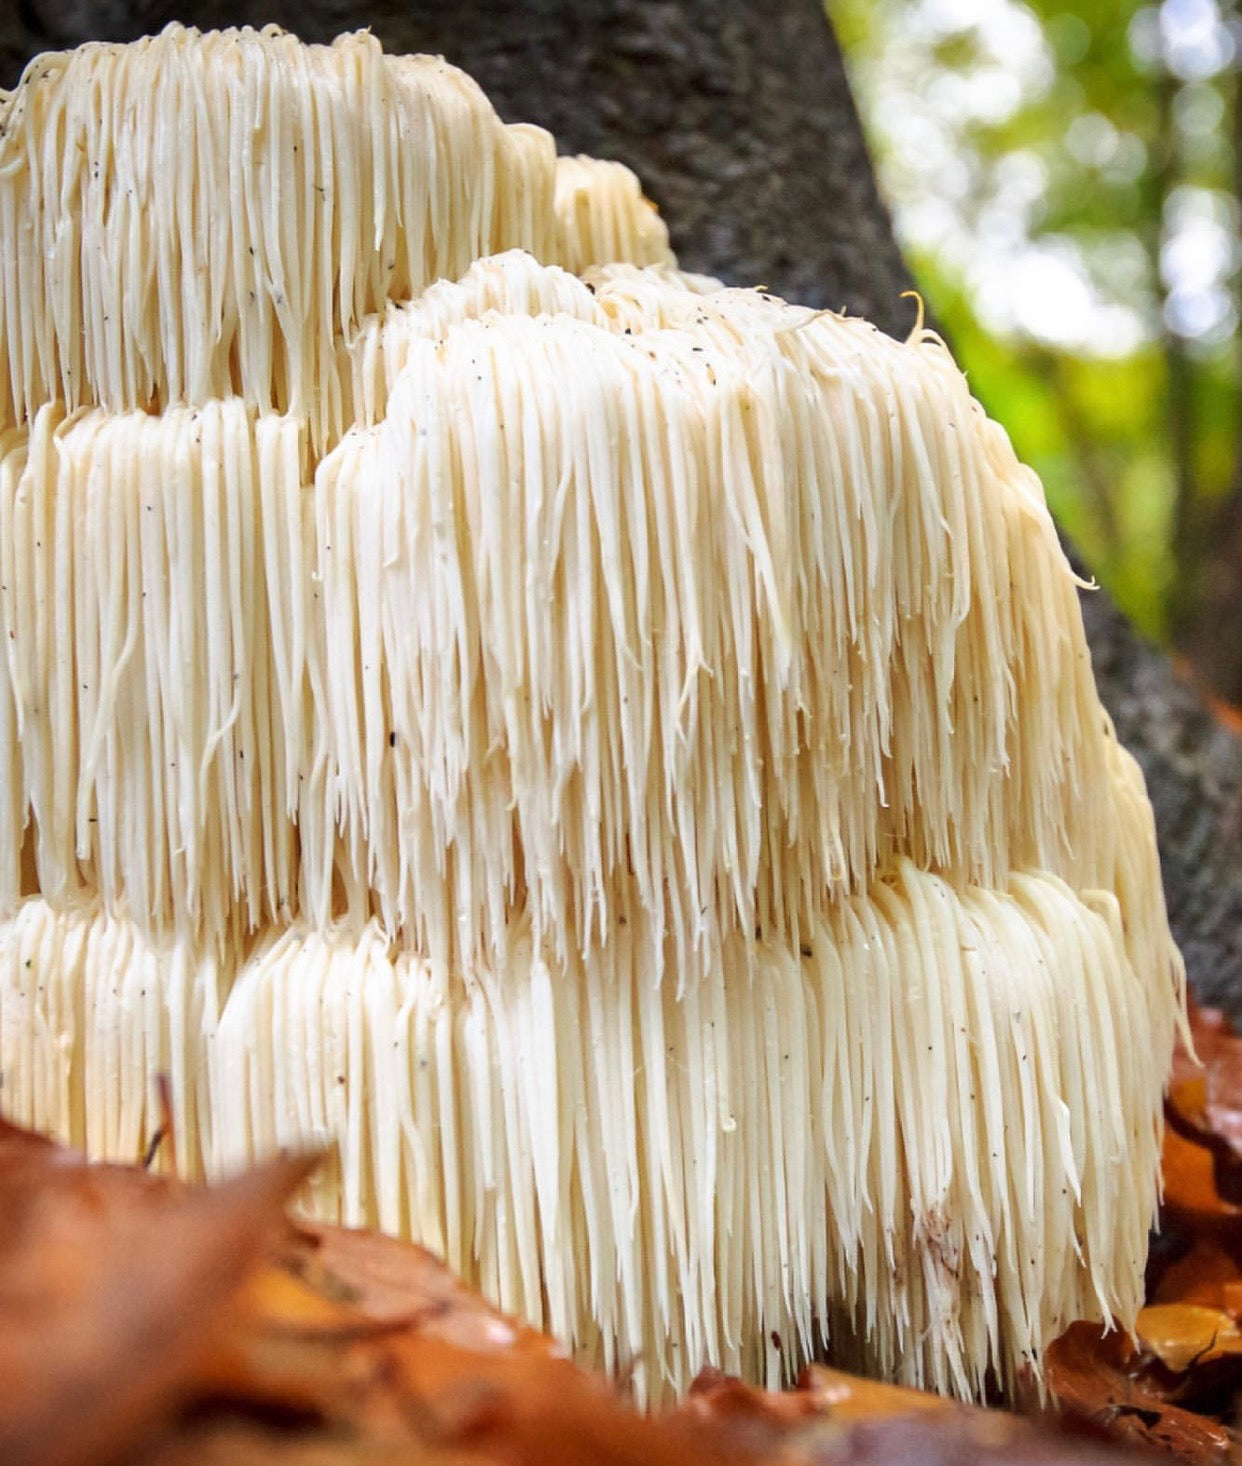 Fungi 101: Lion's Mane Mushroom